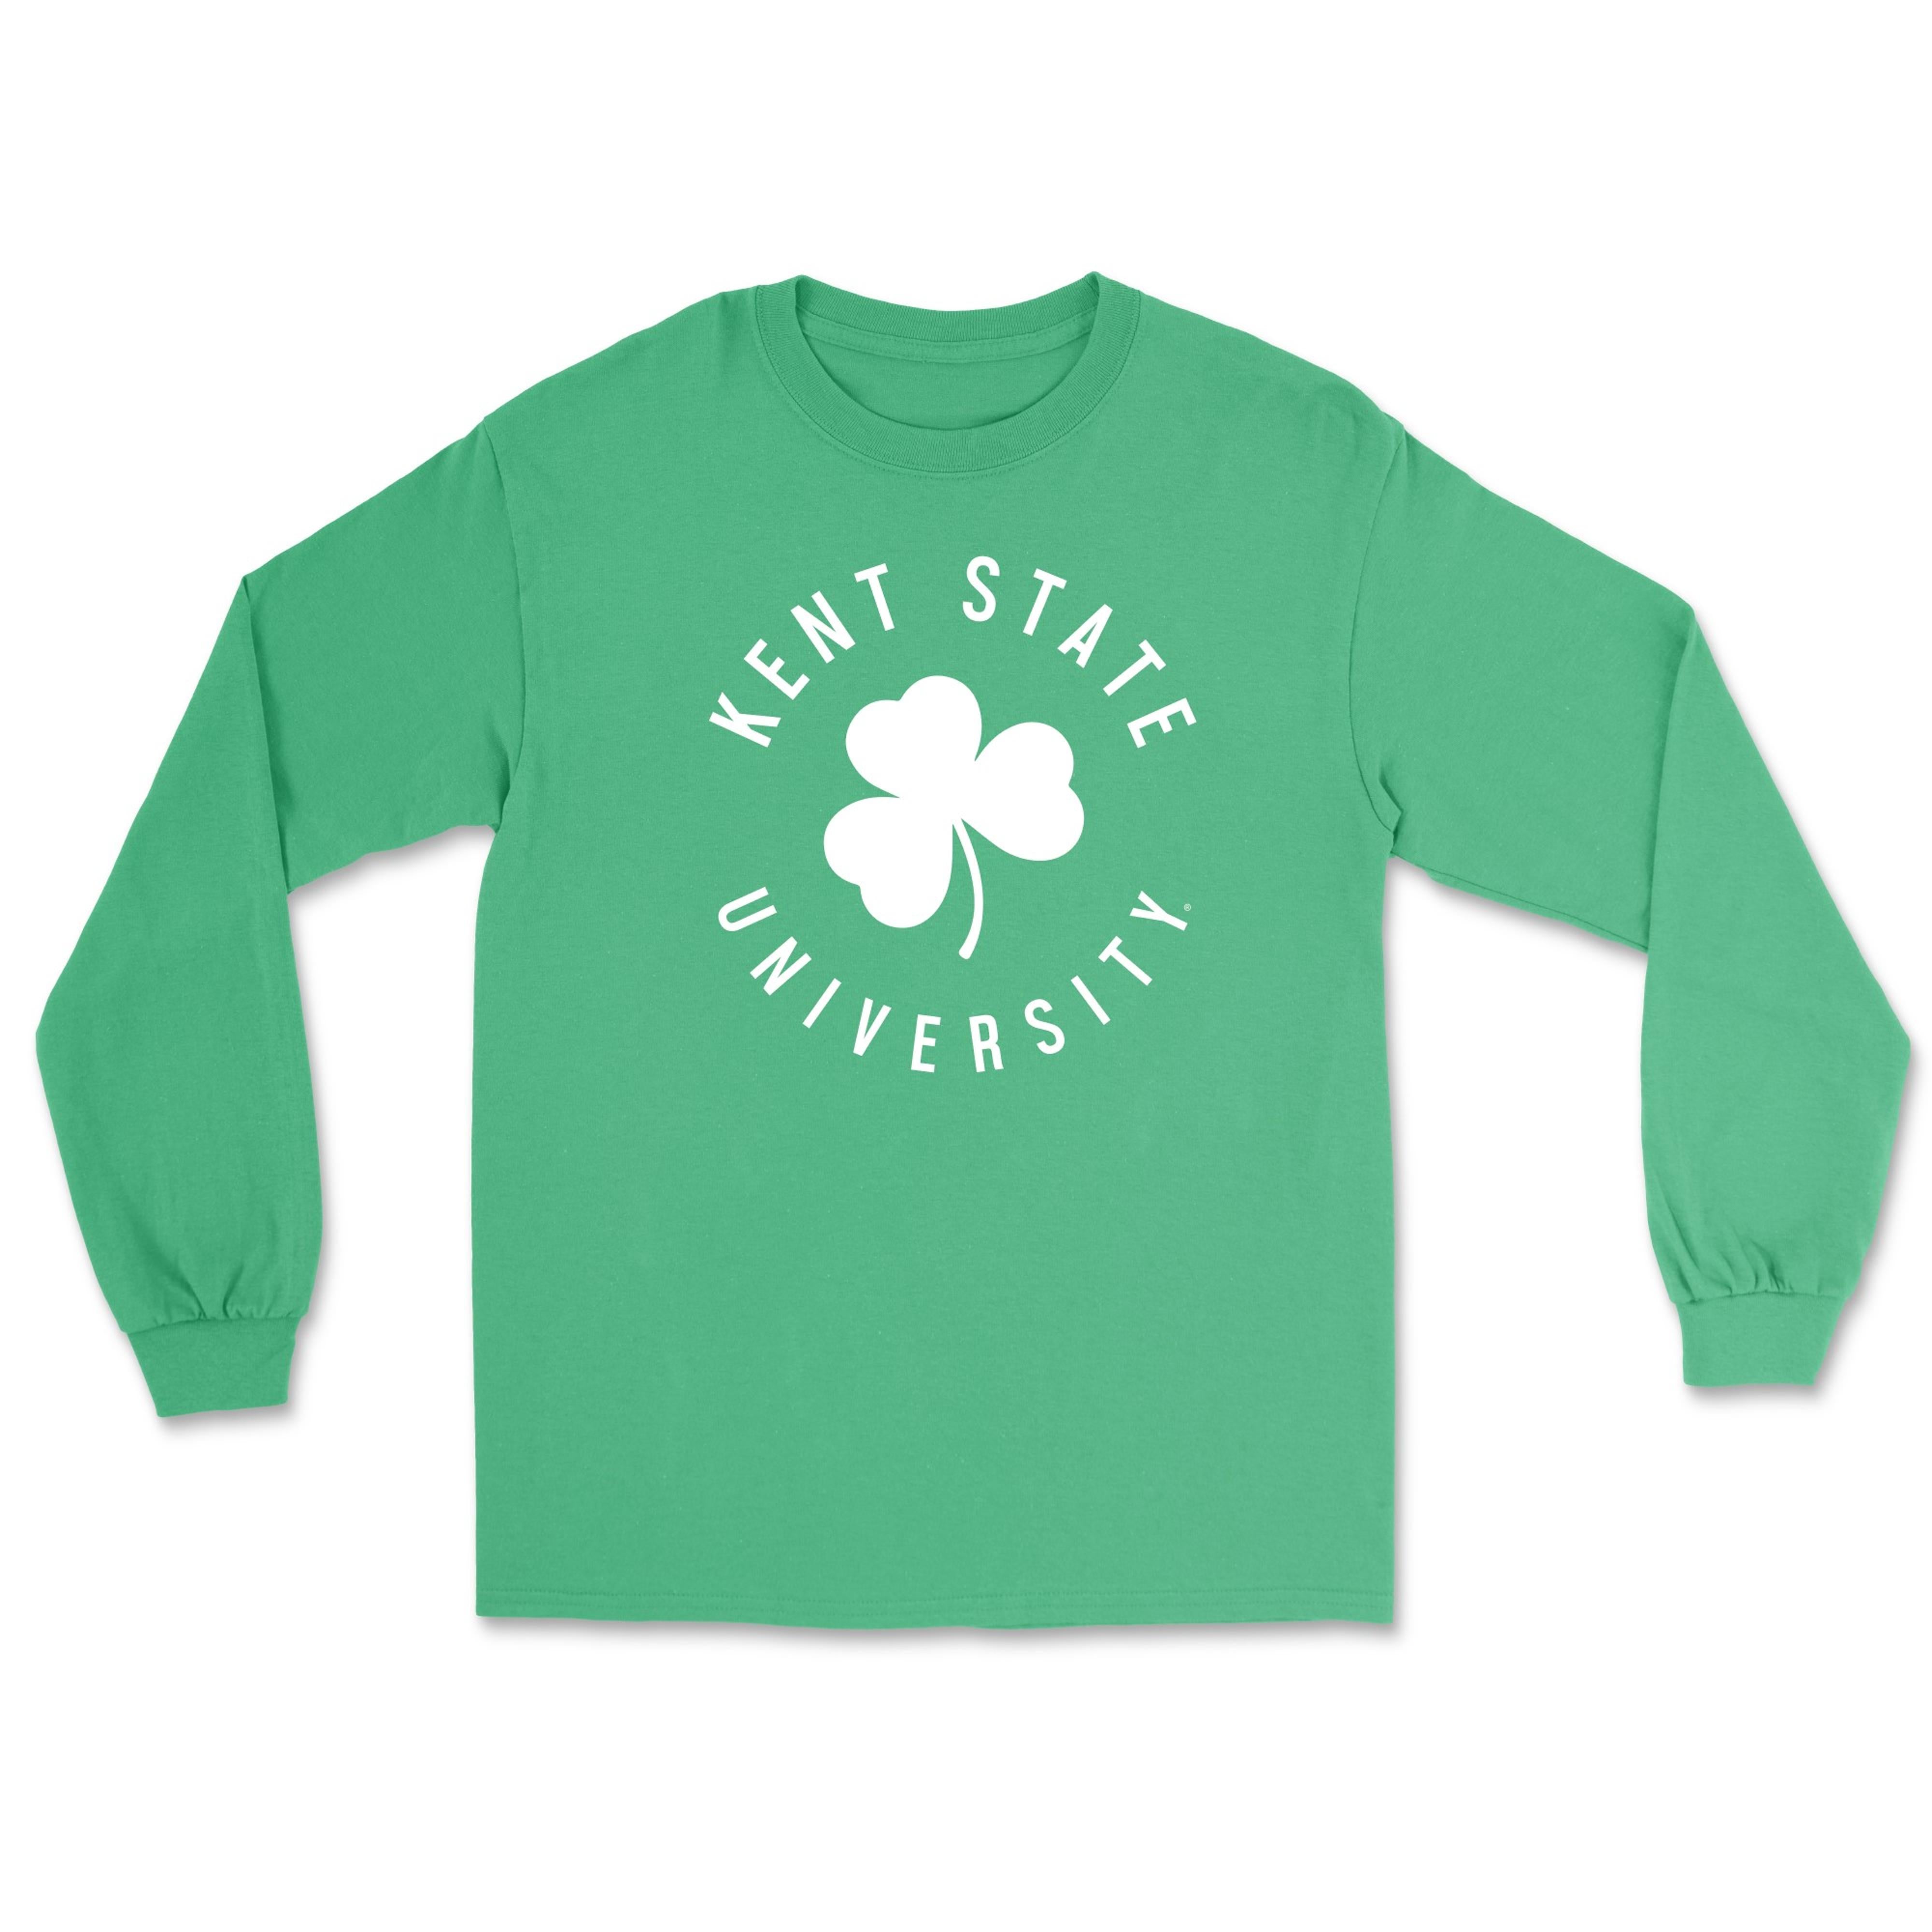 Kent State Green Clover Long Sleeve T-Shirt